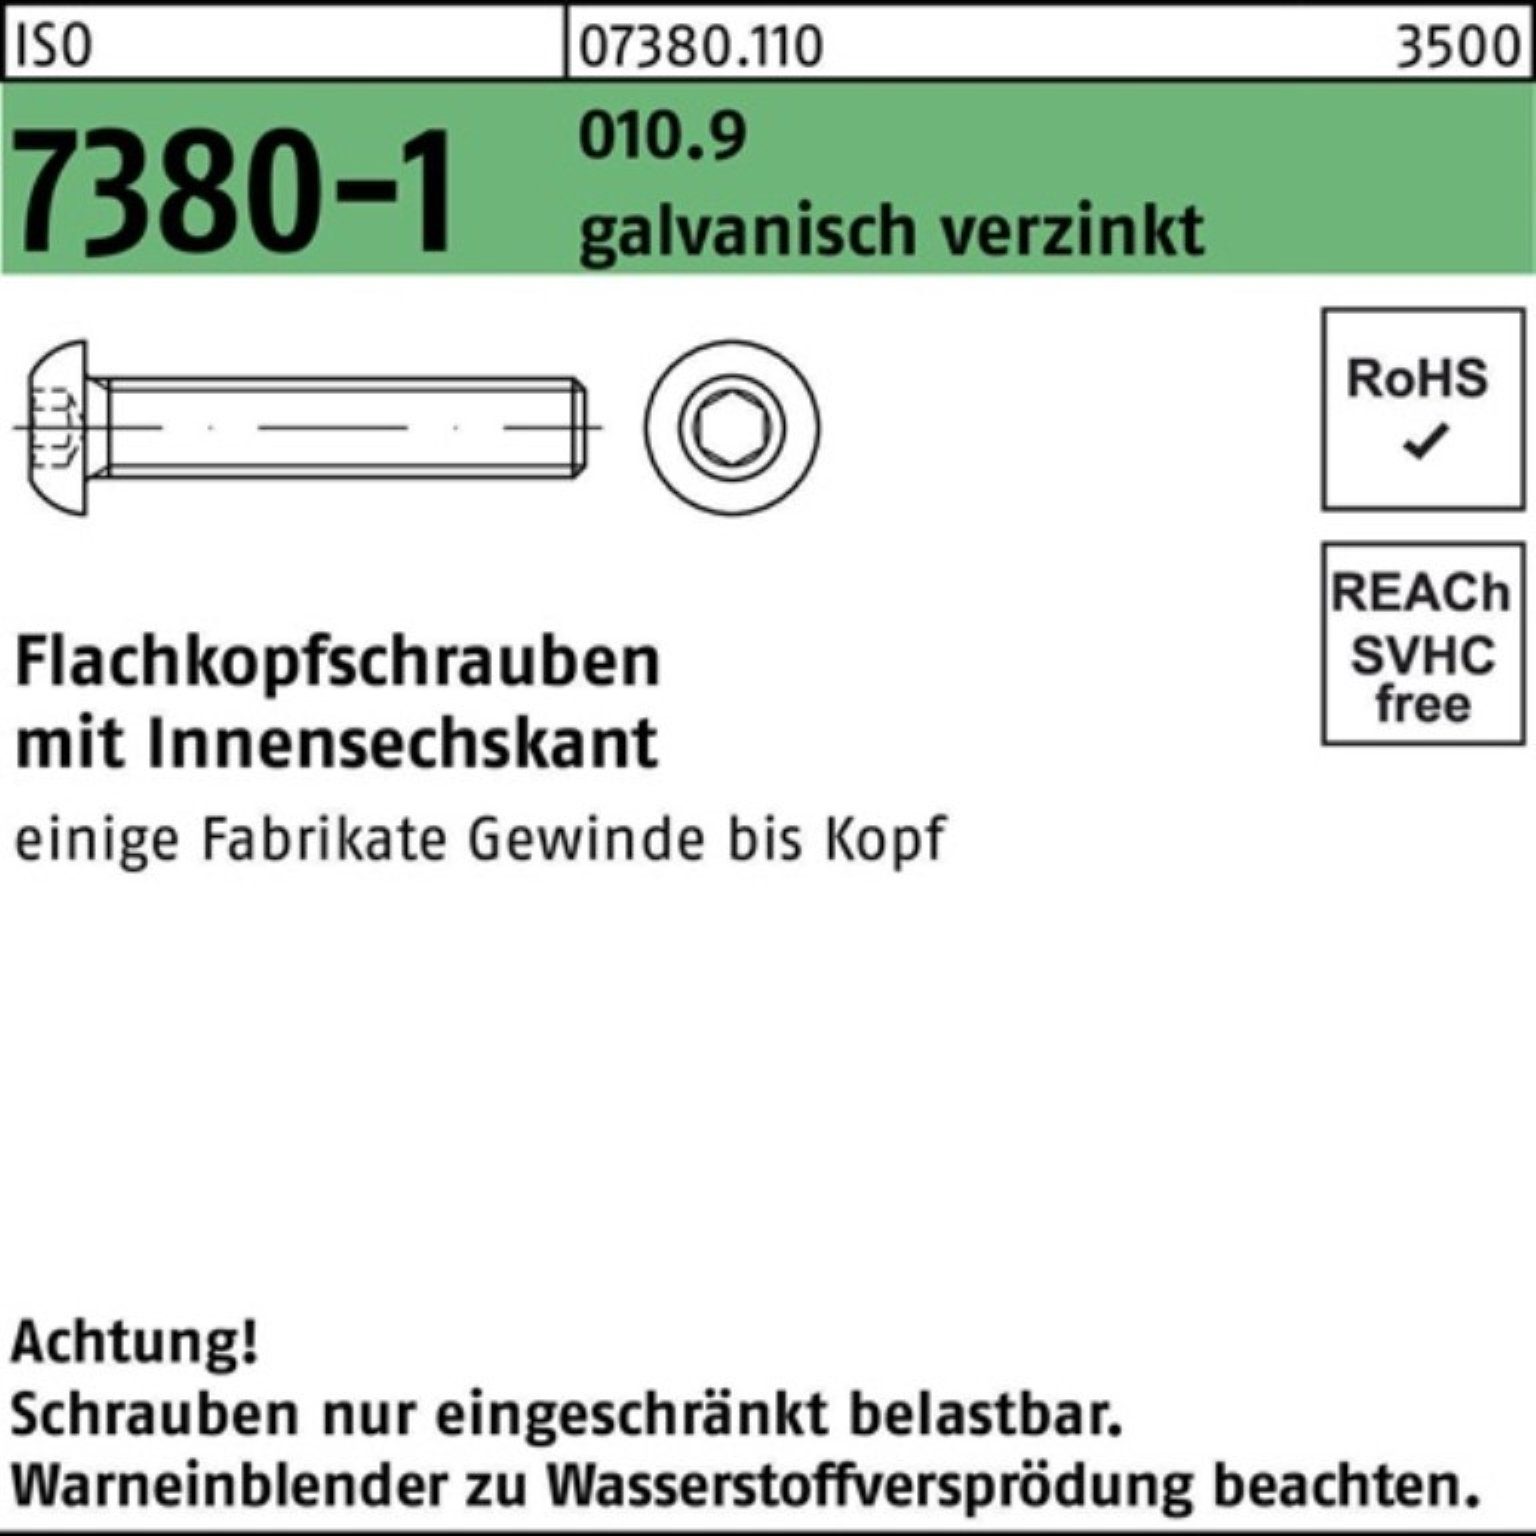 Reyher Schraube 100er M10x50 Innen-6kt Flachkopfschraube 010.9 galv.ve 7380-1 Pack ISO